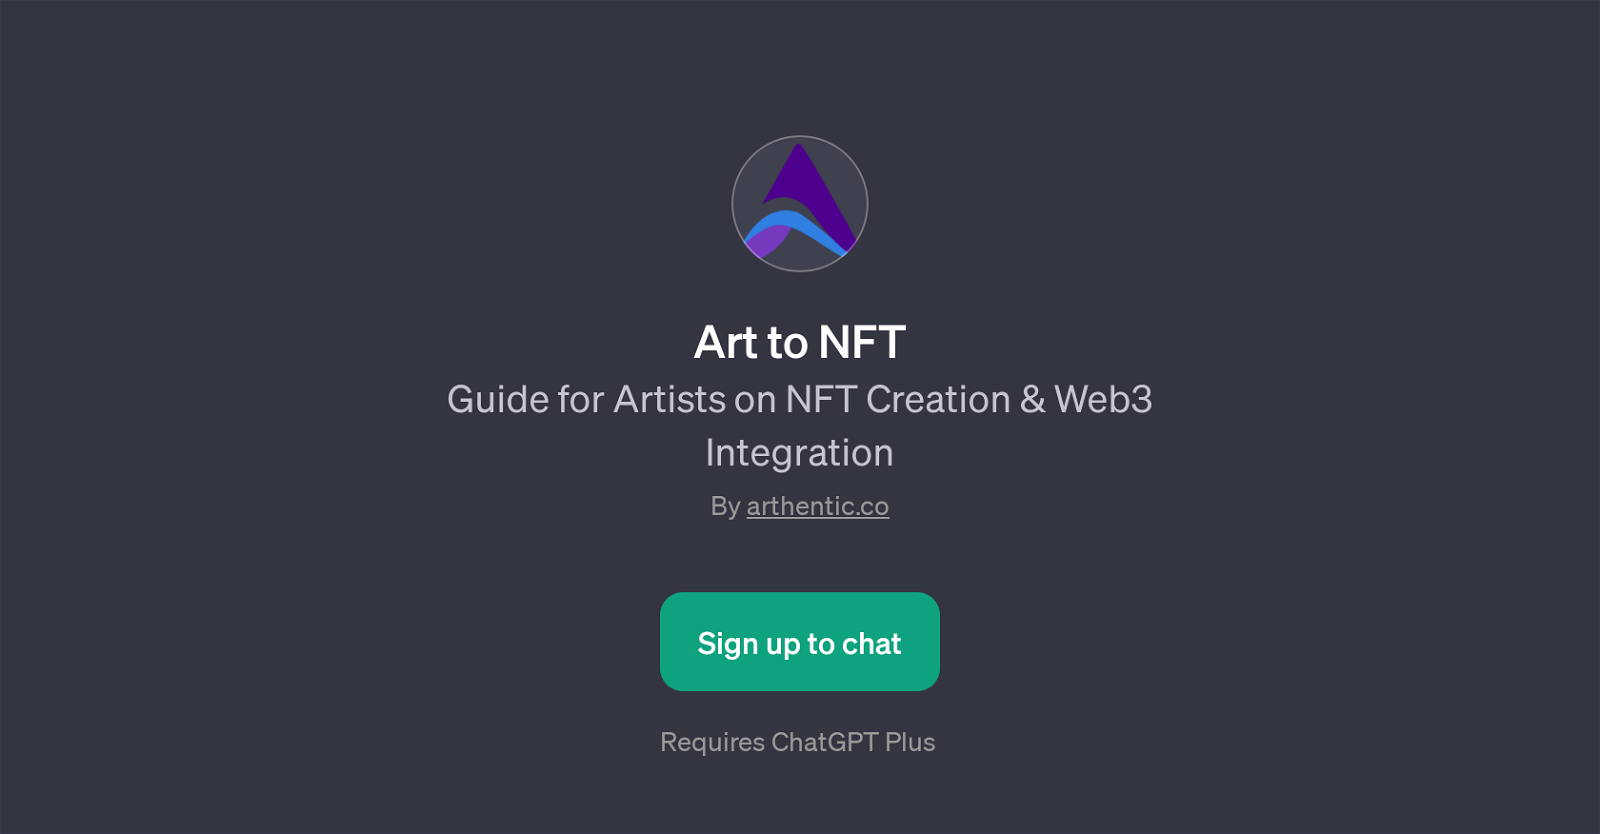 Art to NFT website